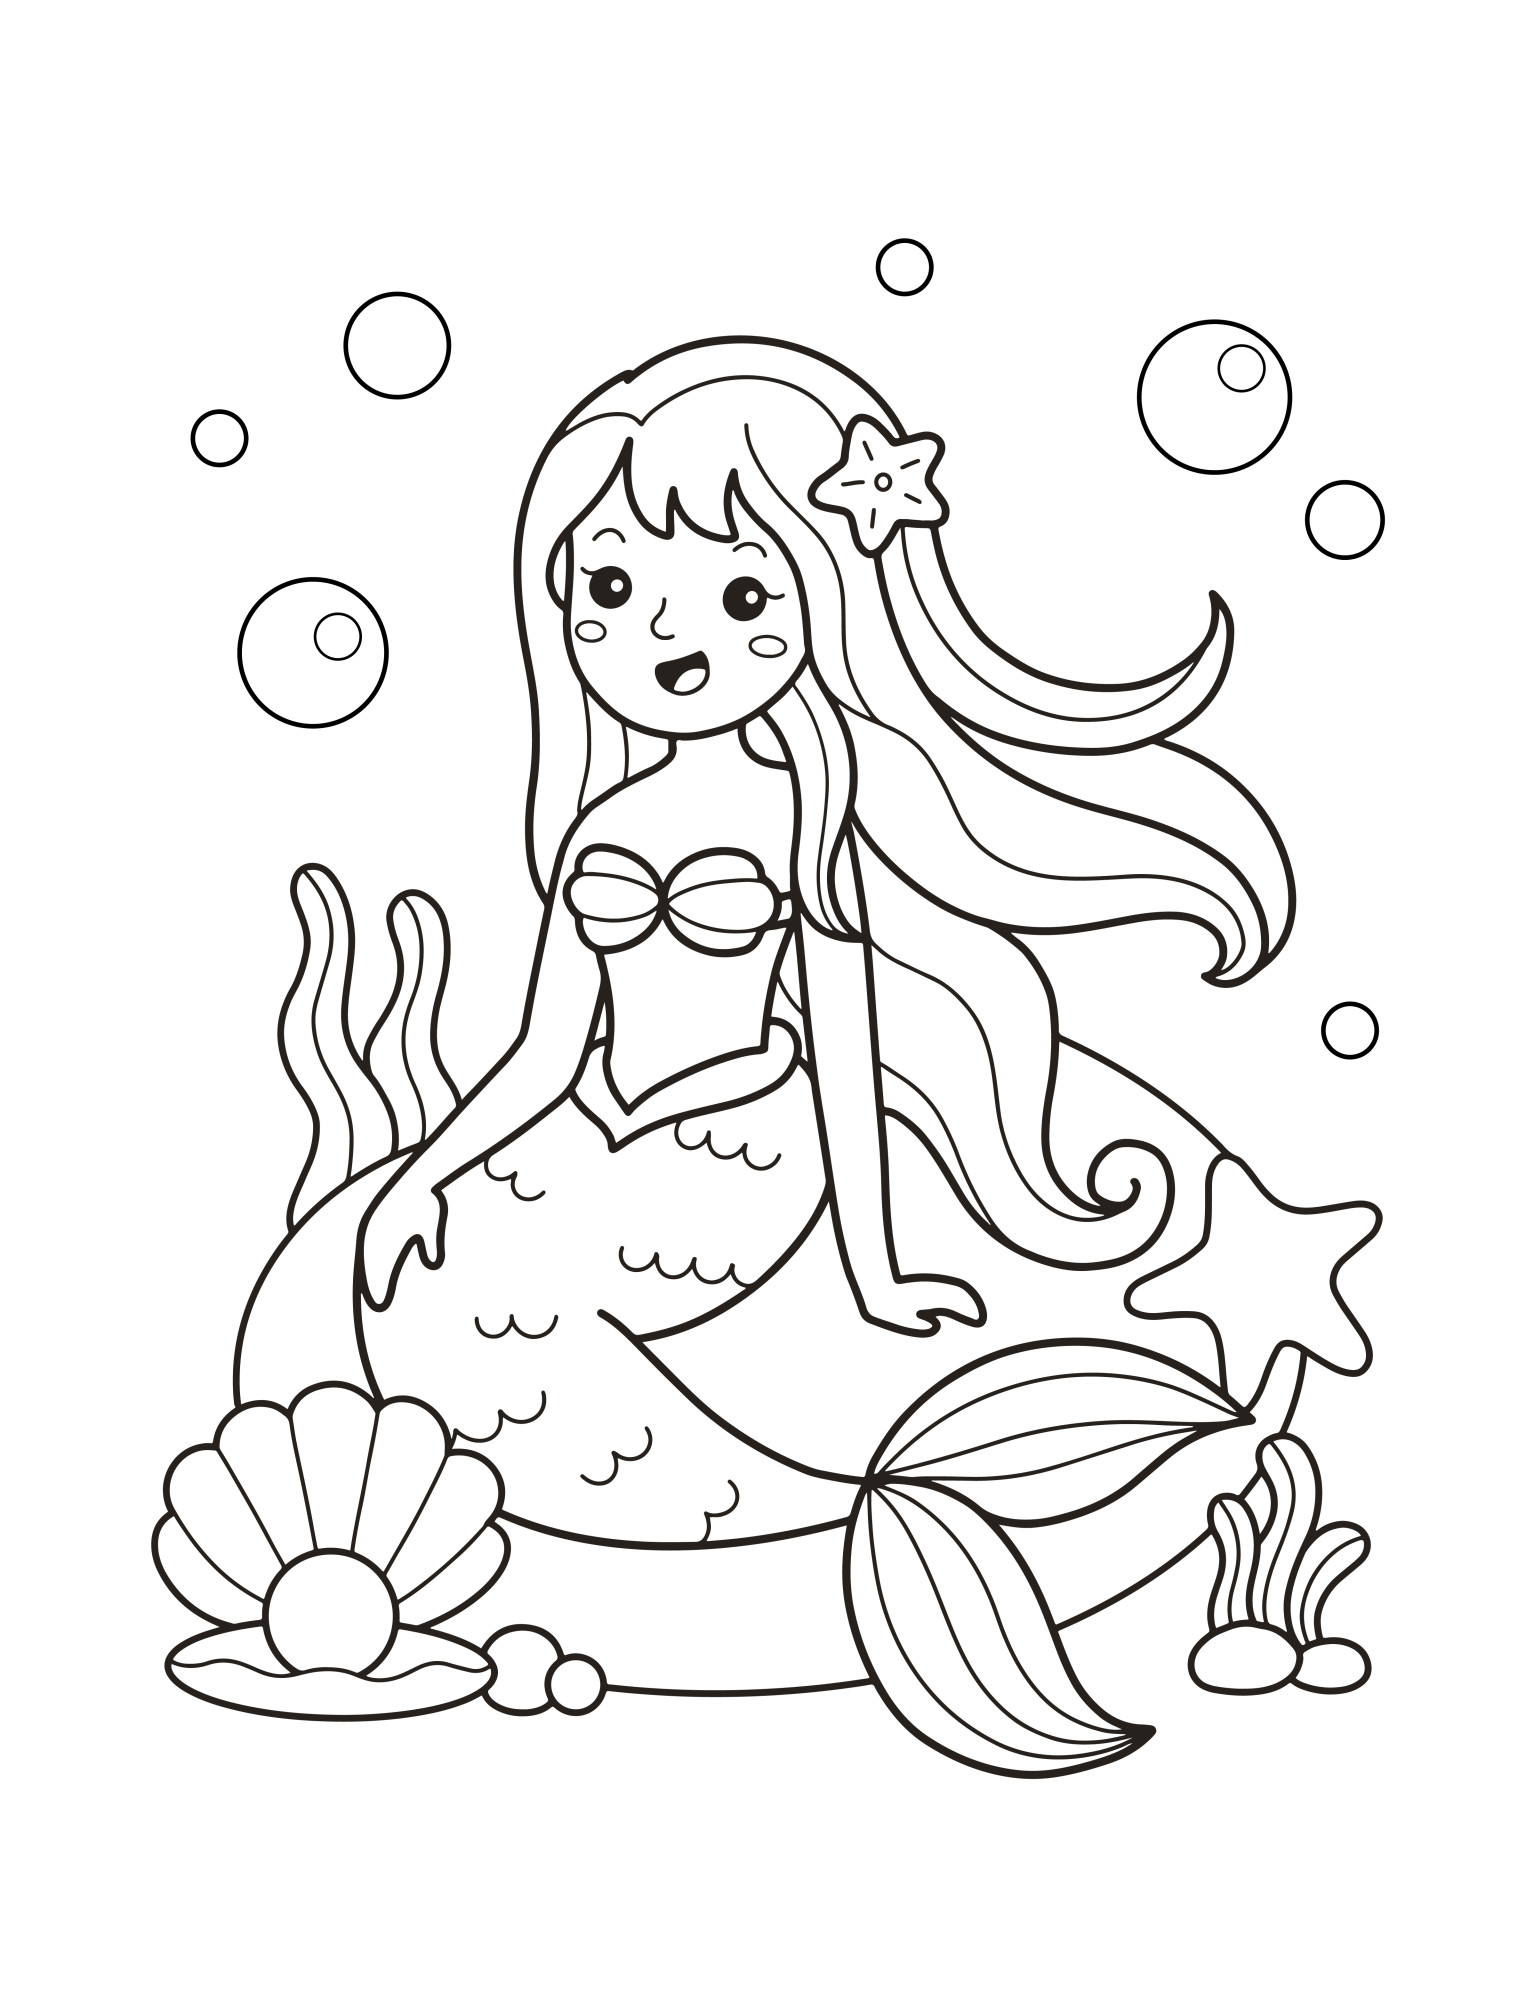 Раскраска для детей: красавица русалка отдыхает на камне